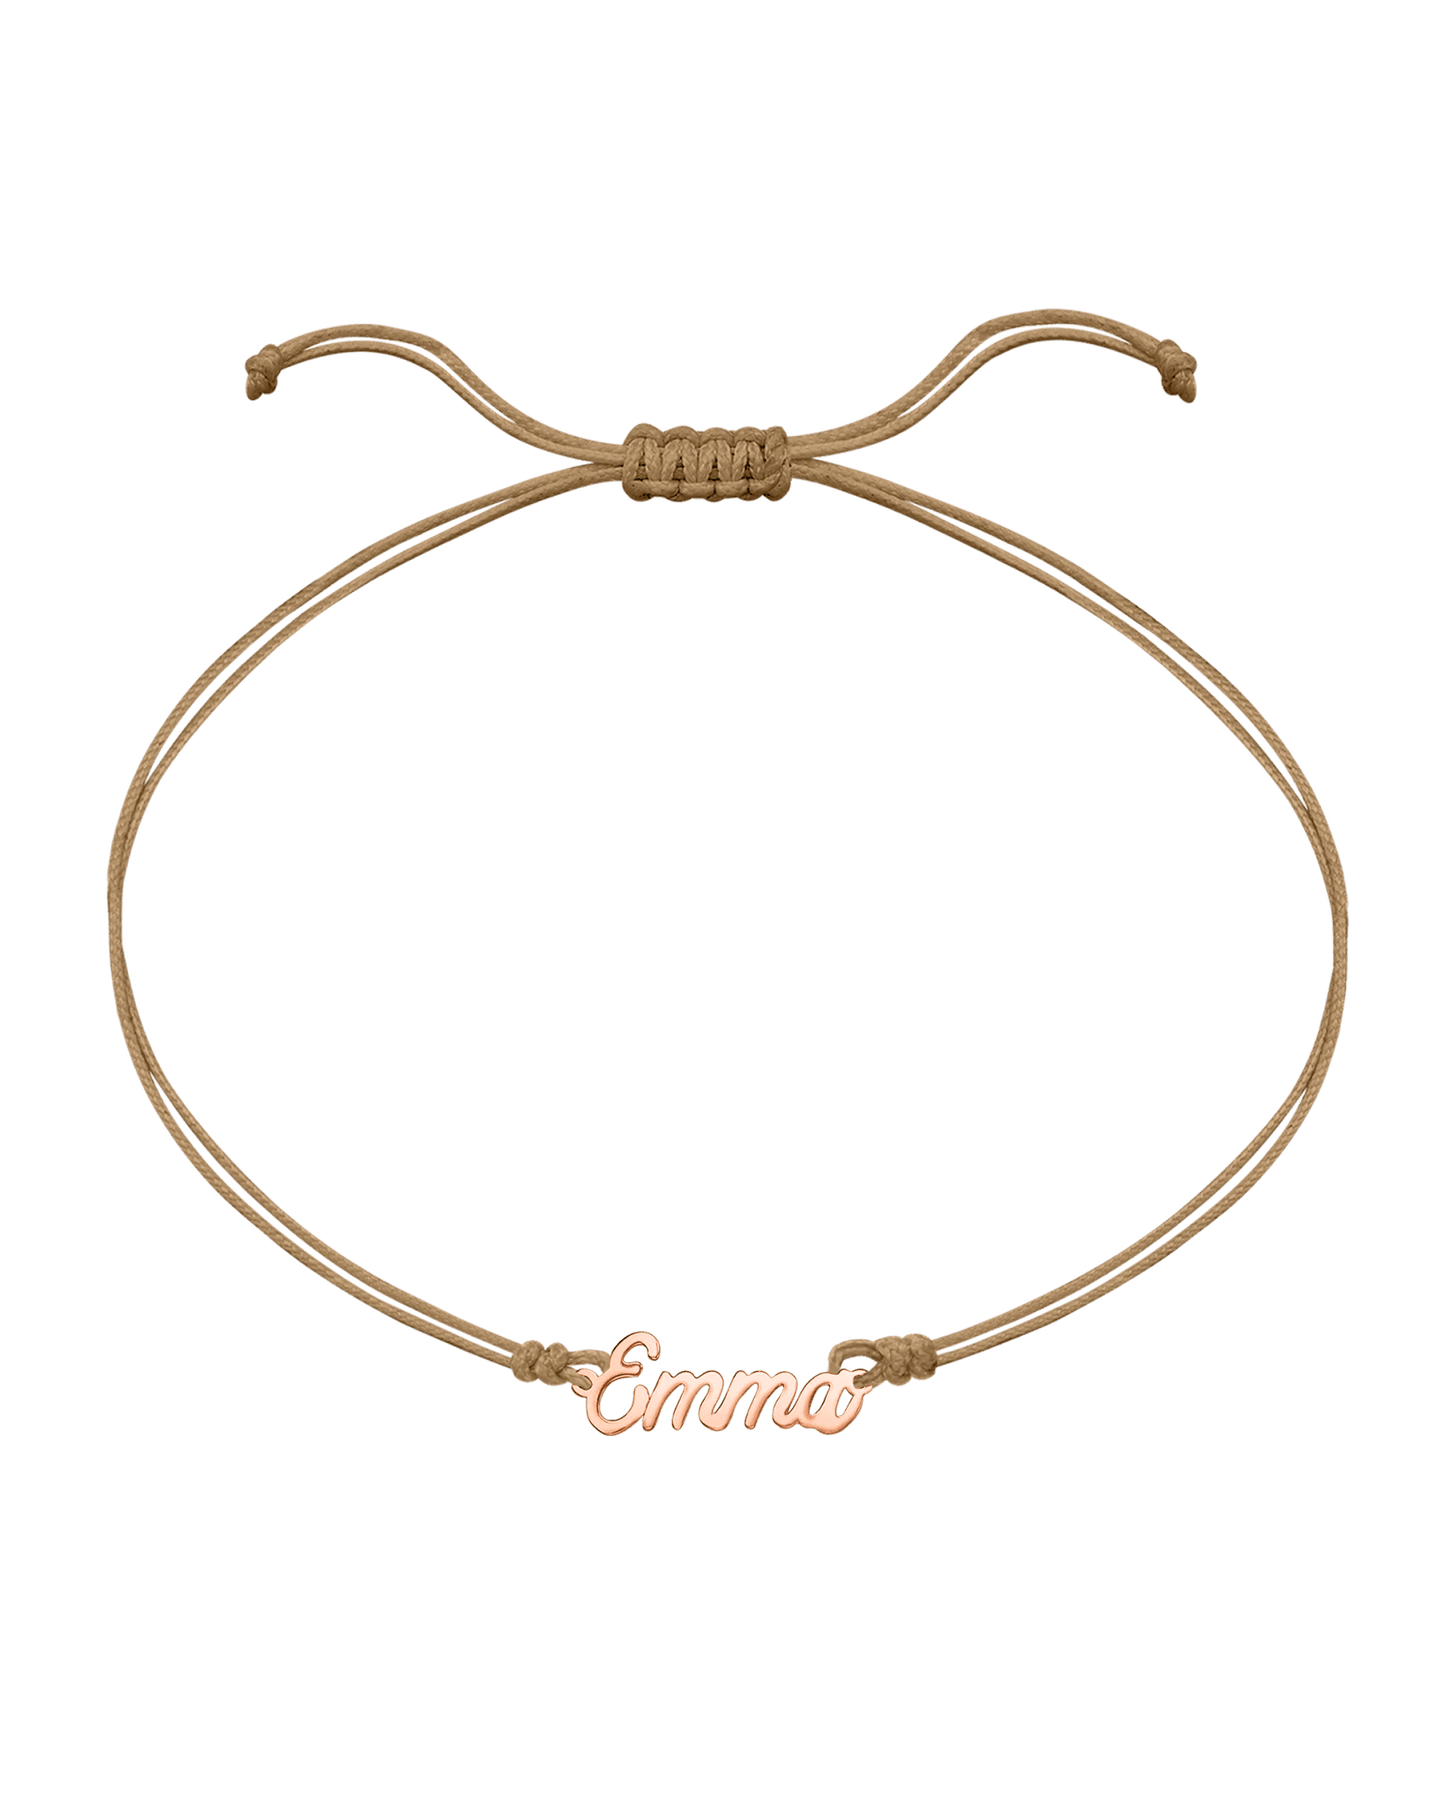 Name Plate String of Love - 14K Rose Gold Bracelets 14K Solid Gold Camel 1 